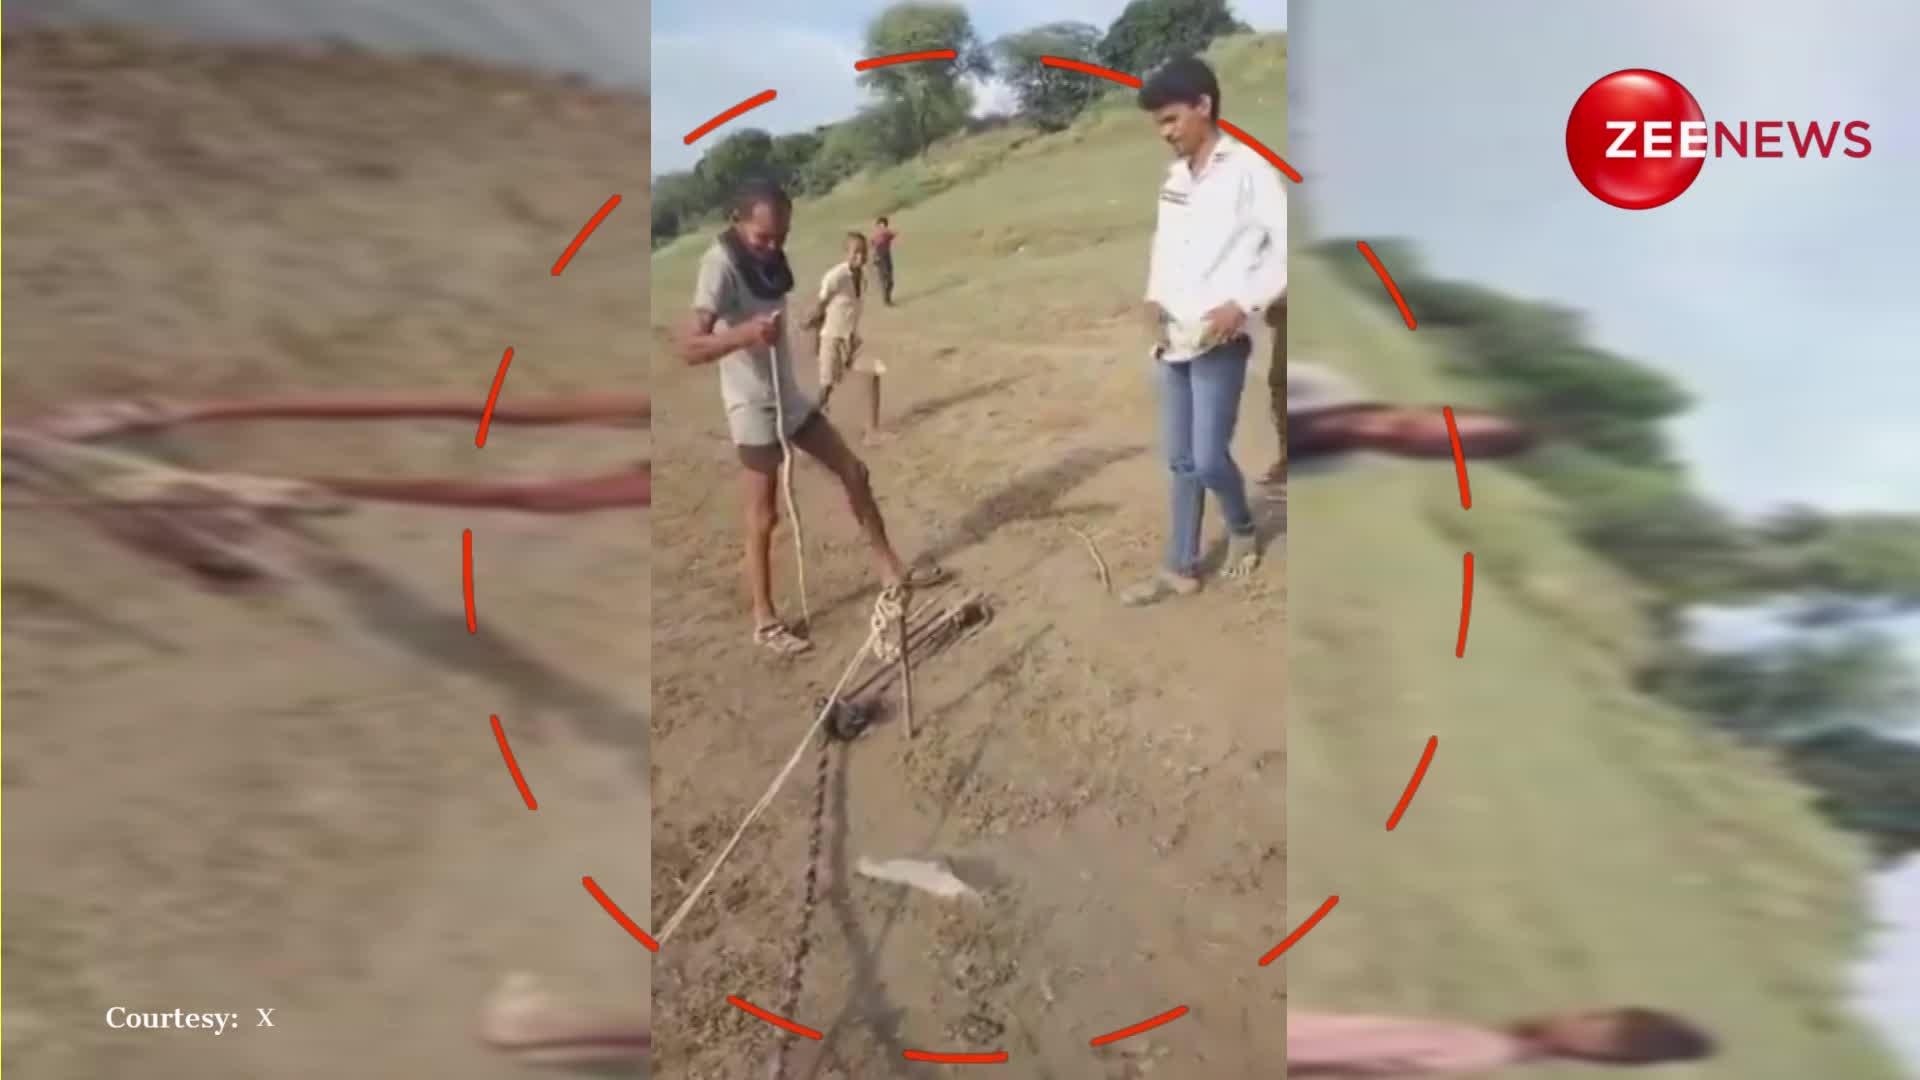 नदी से निकालकर जिंदा सांप खा गया यूपी का डकैत गंगा प्रसाद, वीडियो देख लोगों के उड़ गए होश